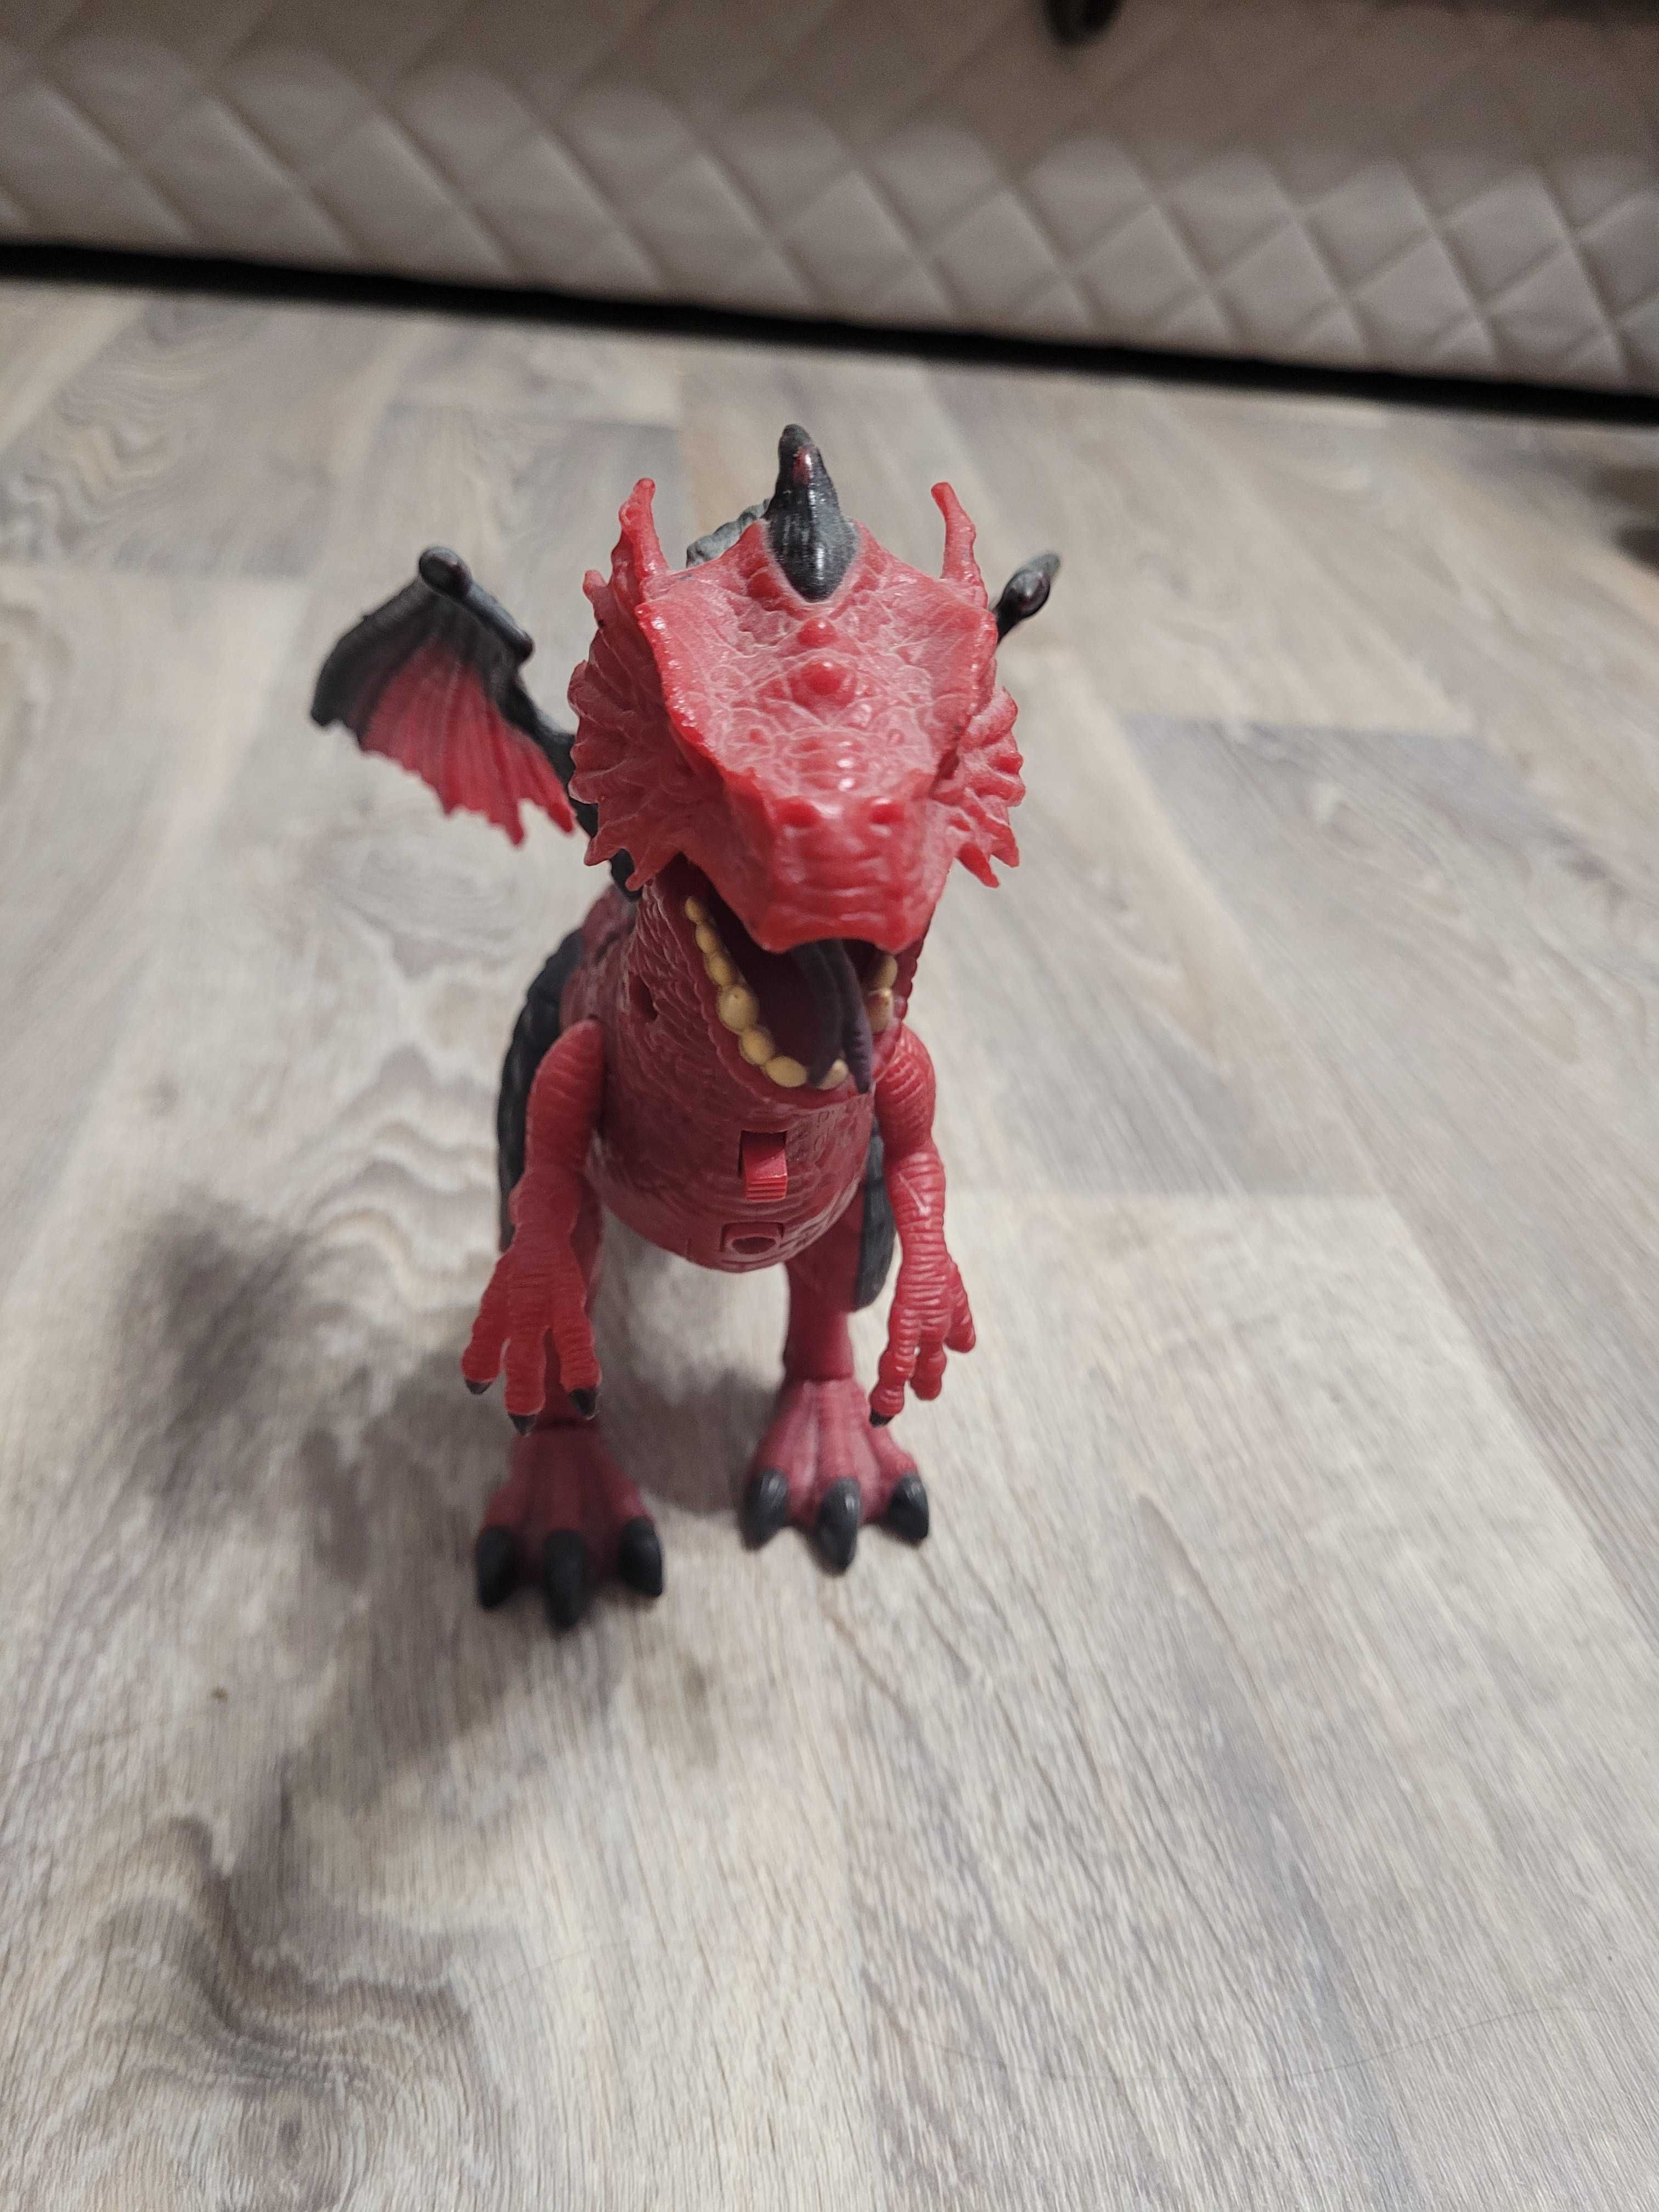 Детская игрушка Дракон (Динозавр) на батарейках